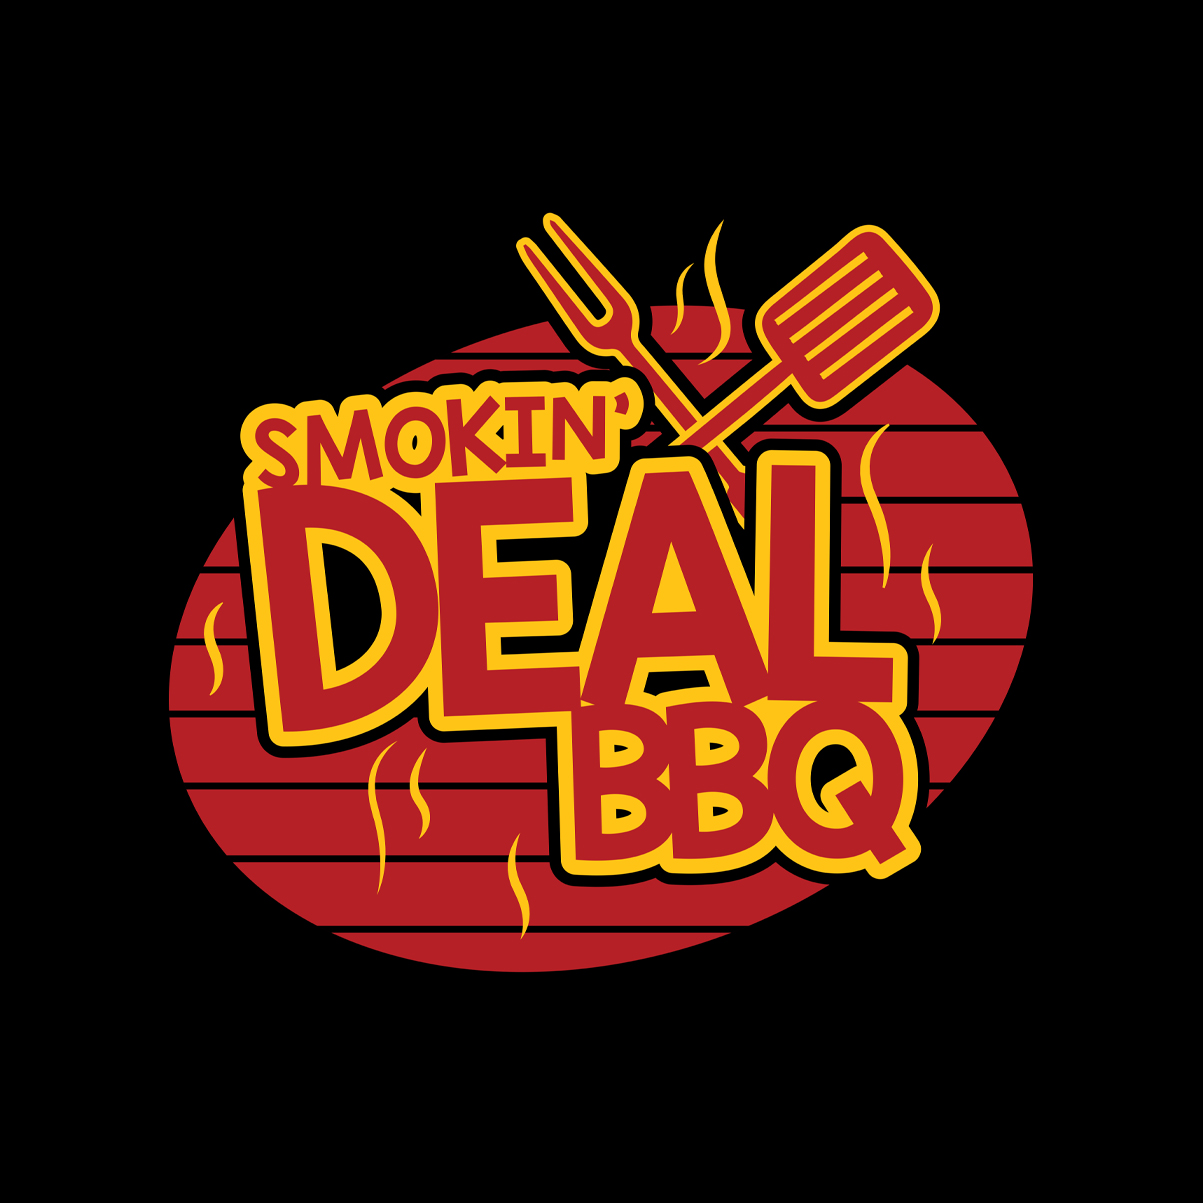 Smokin' Deal BBQ